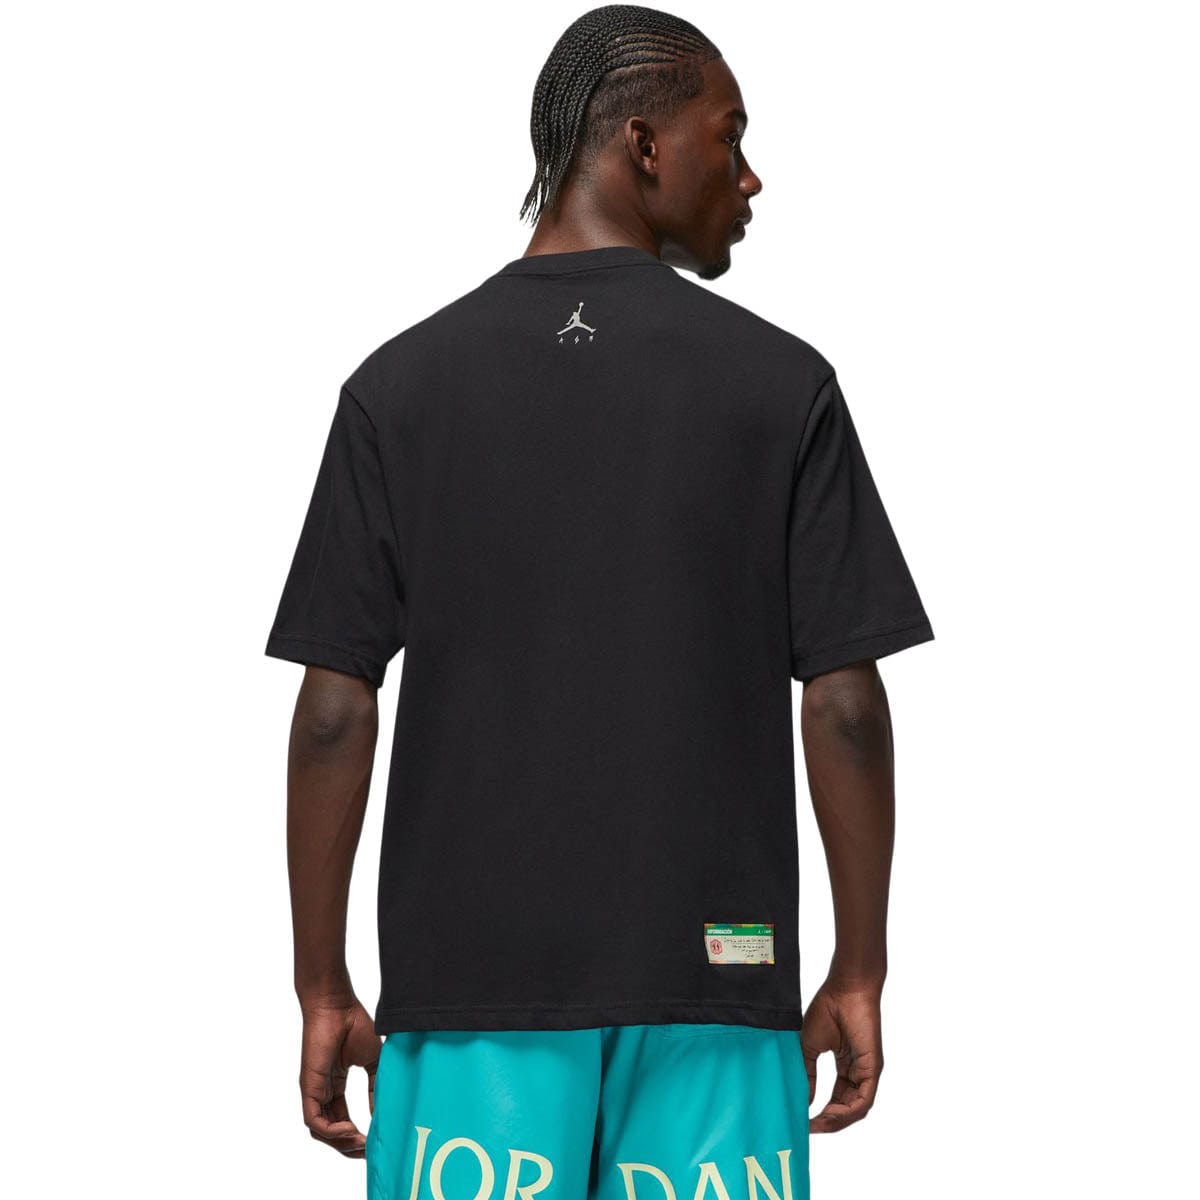 Air Jordan T-Shirts X J BALVIN TEE